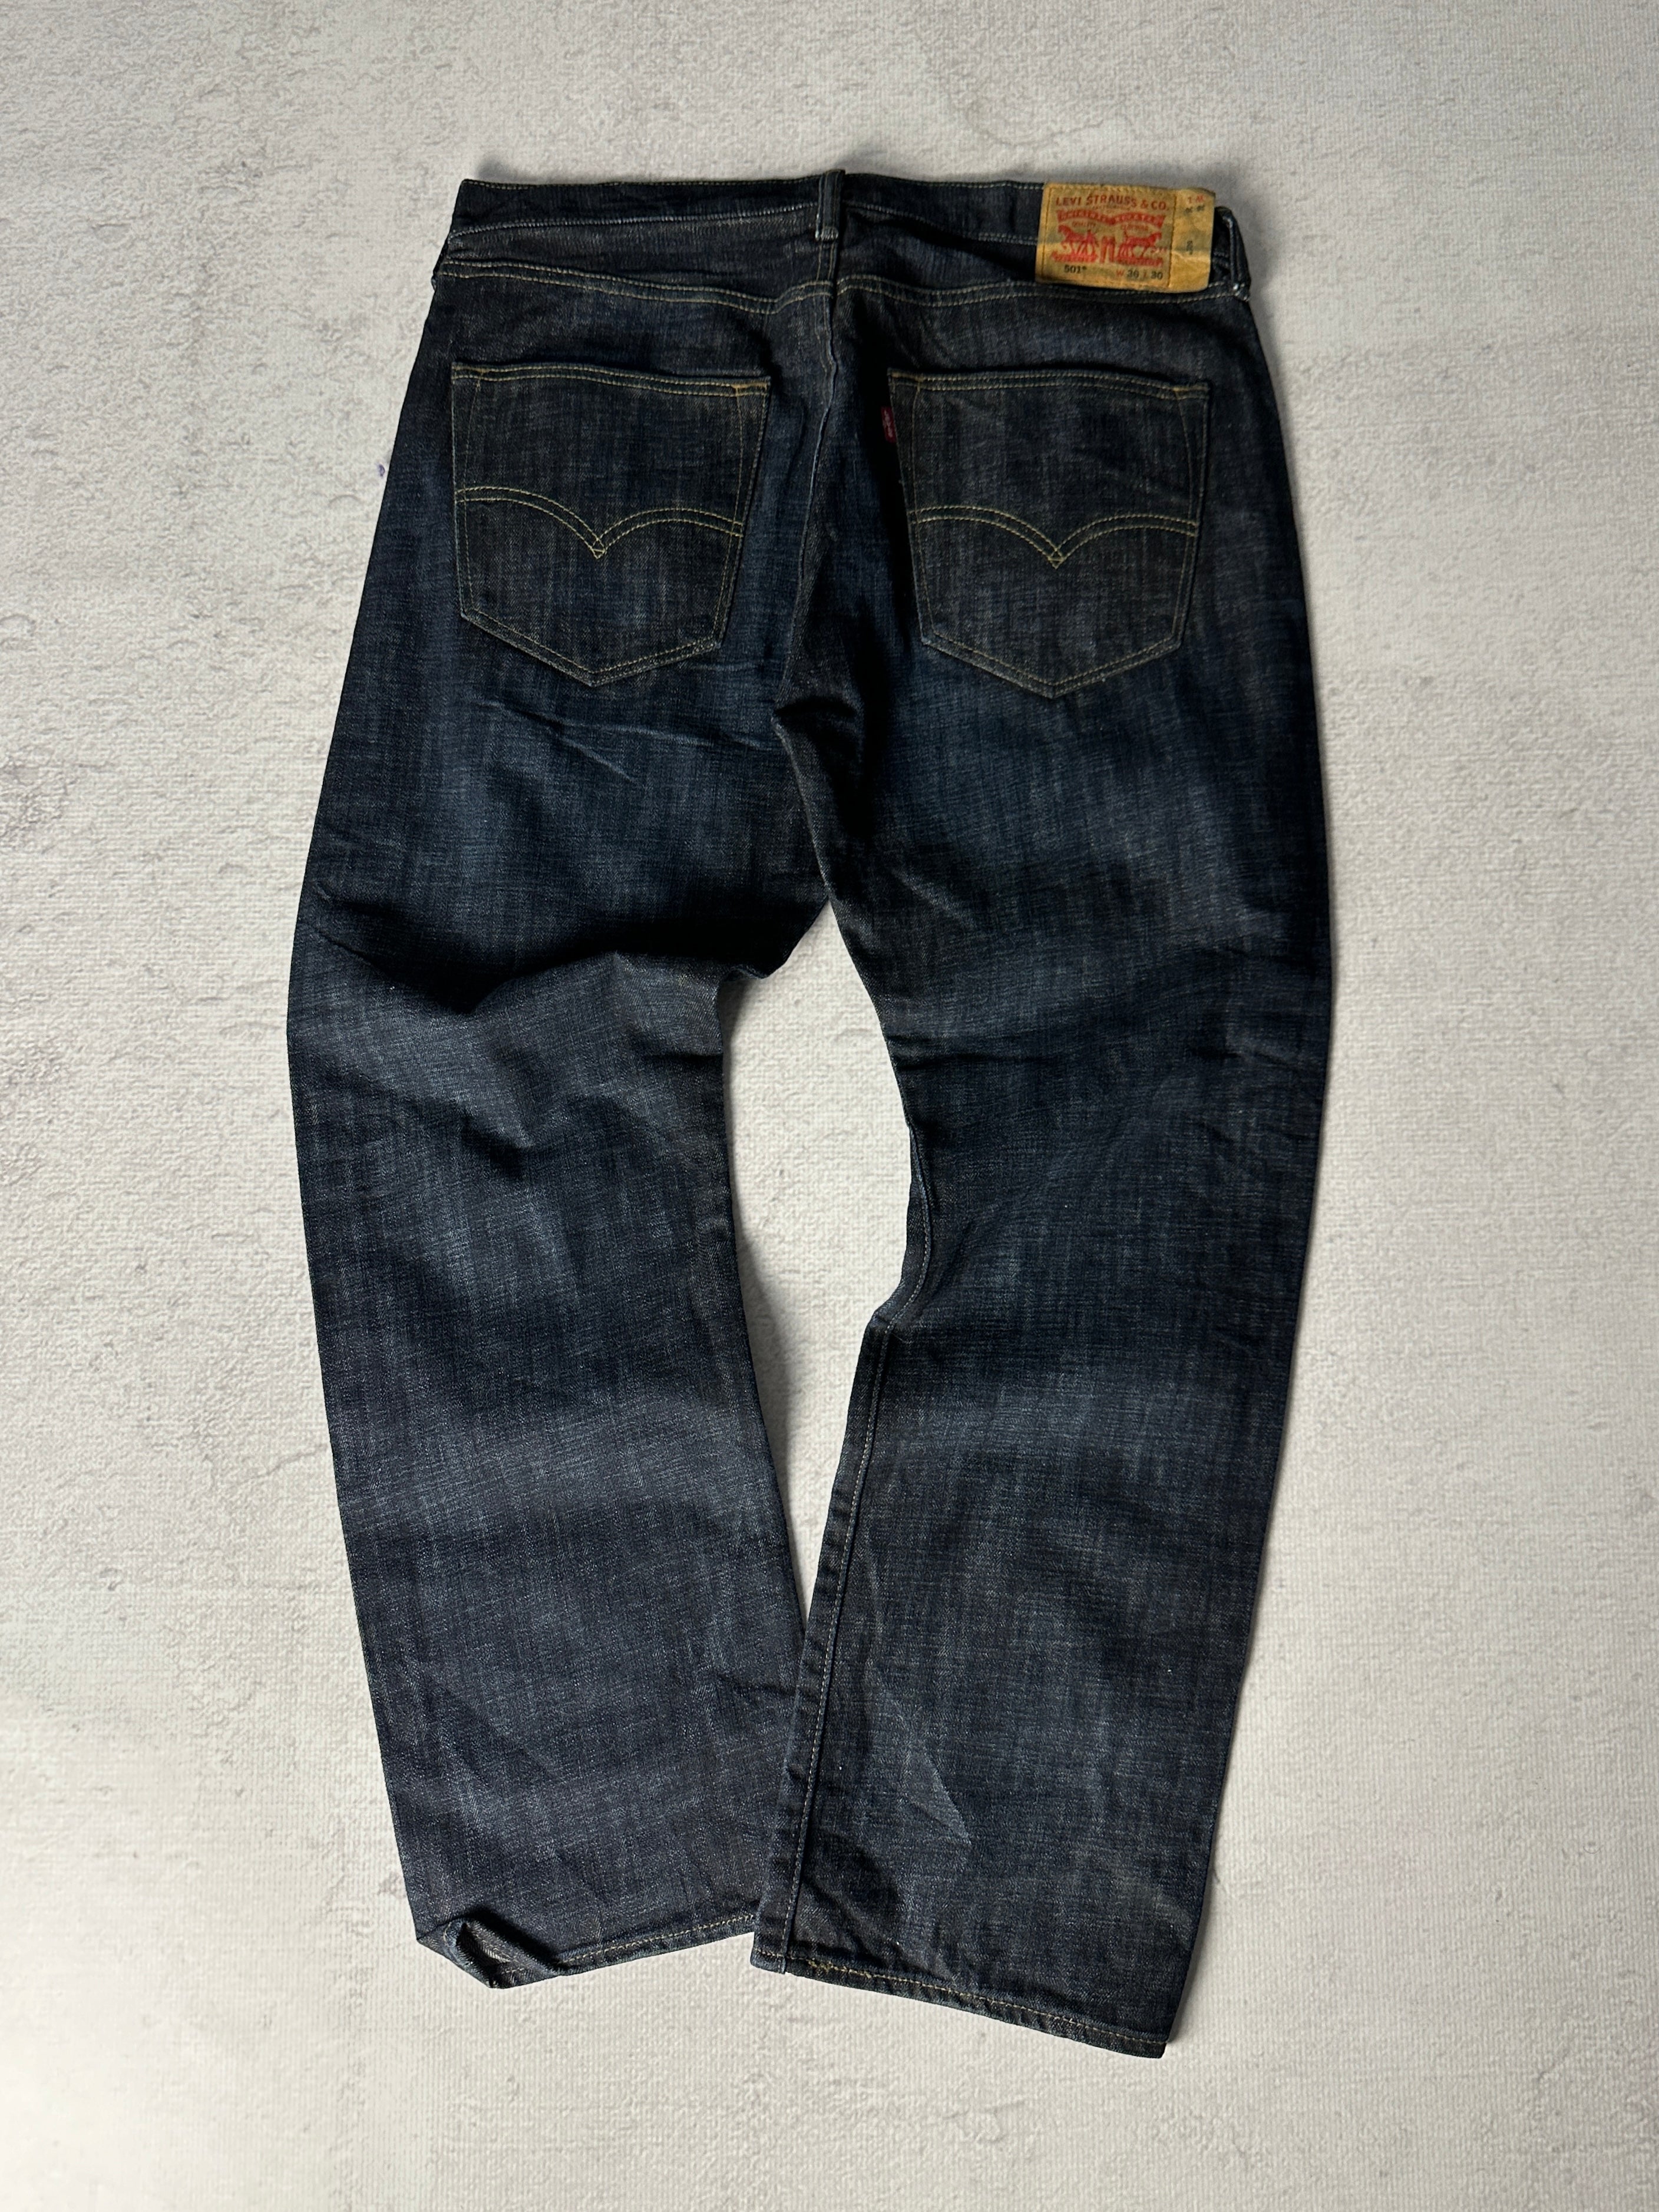 Vintage Levis 501 Jeans - Men's 36W30L